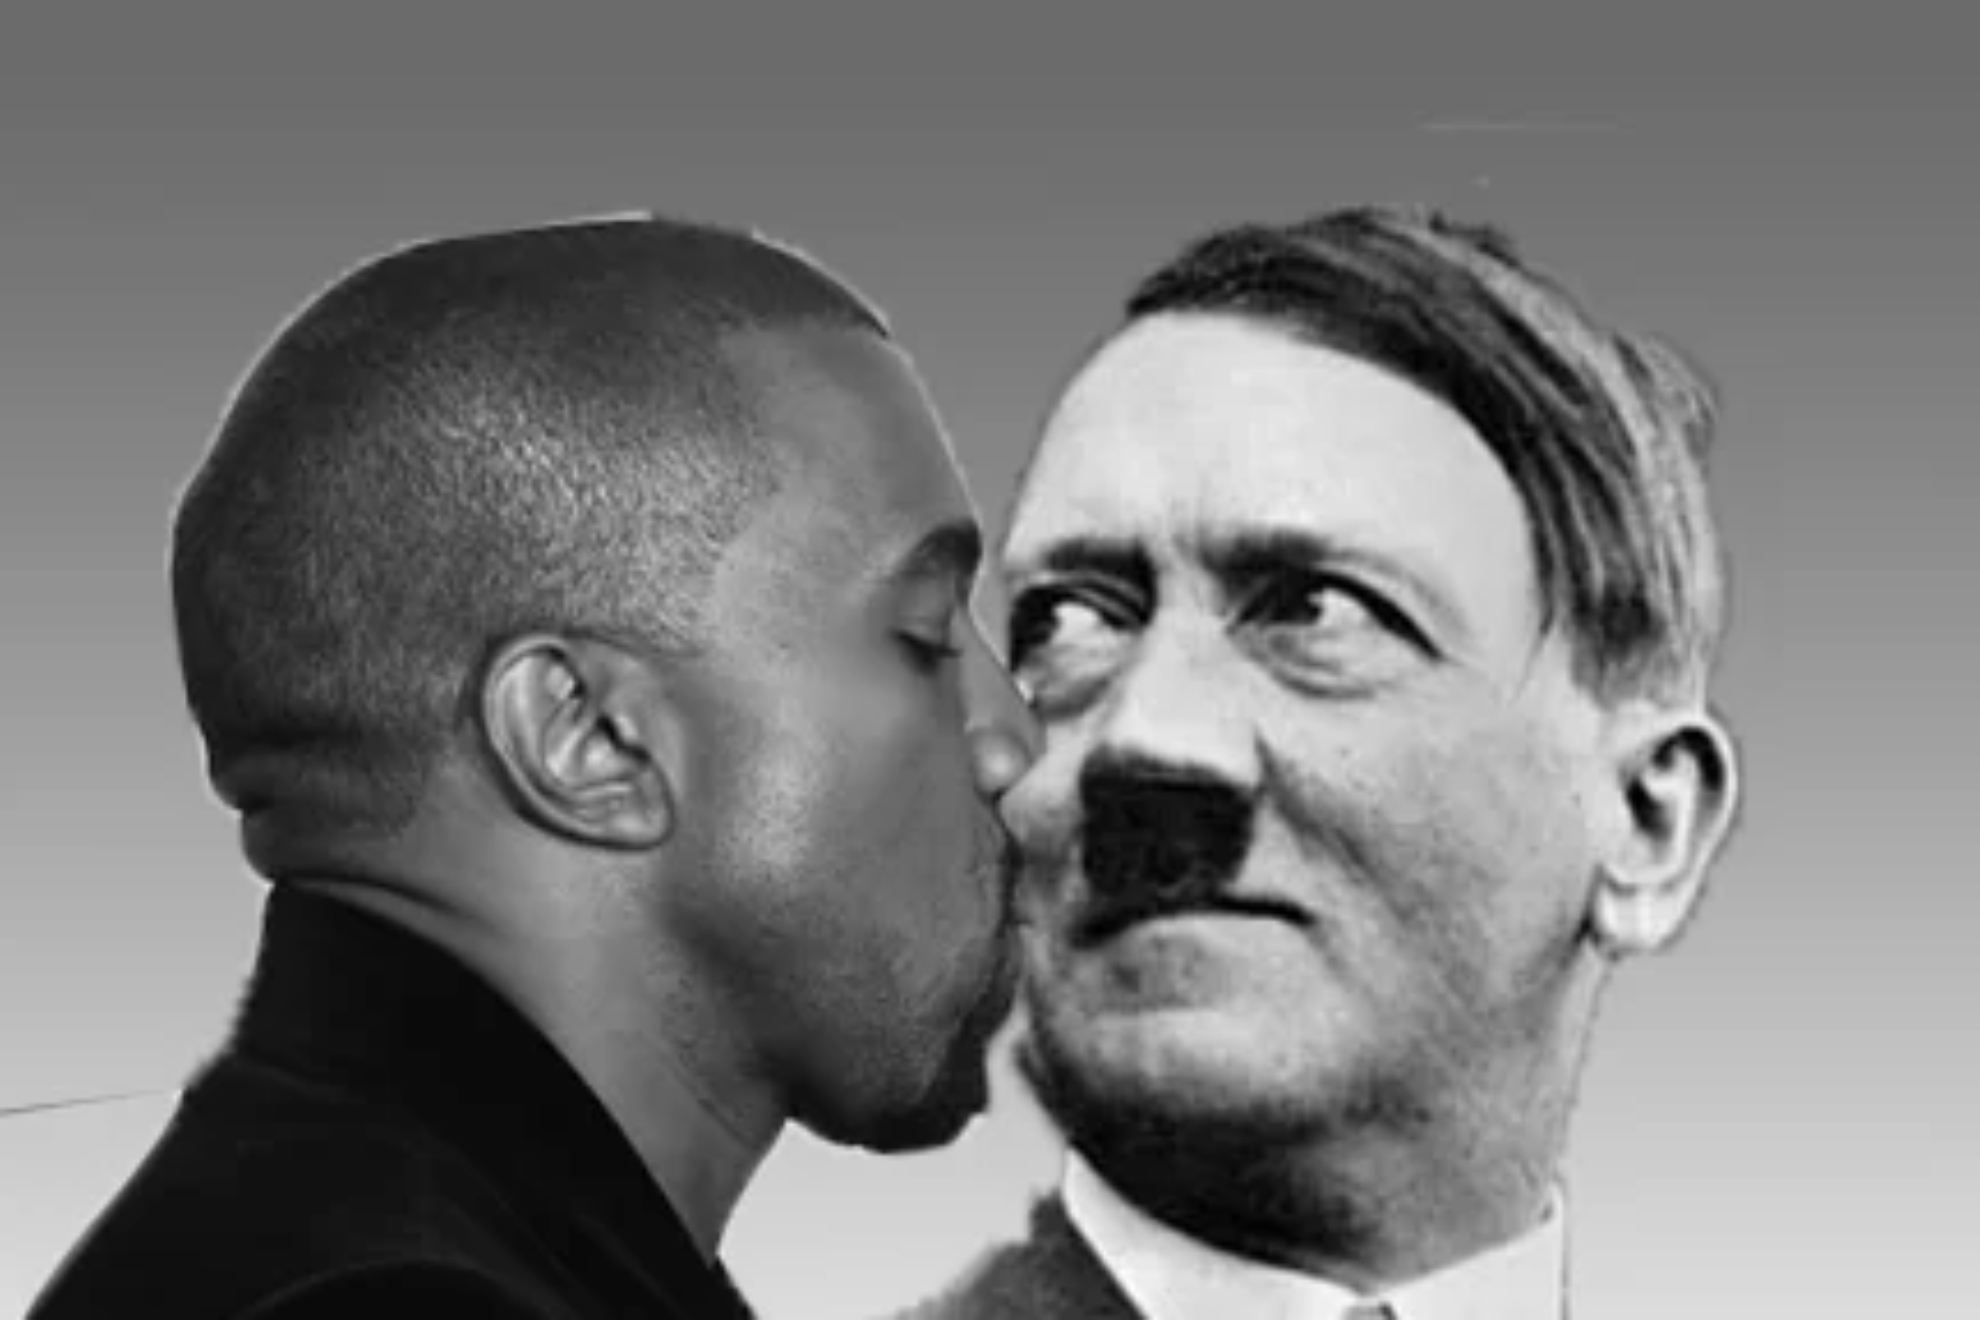 Kanye West and Hitler